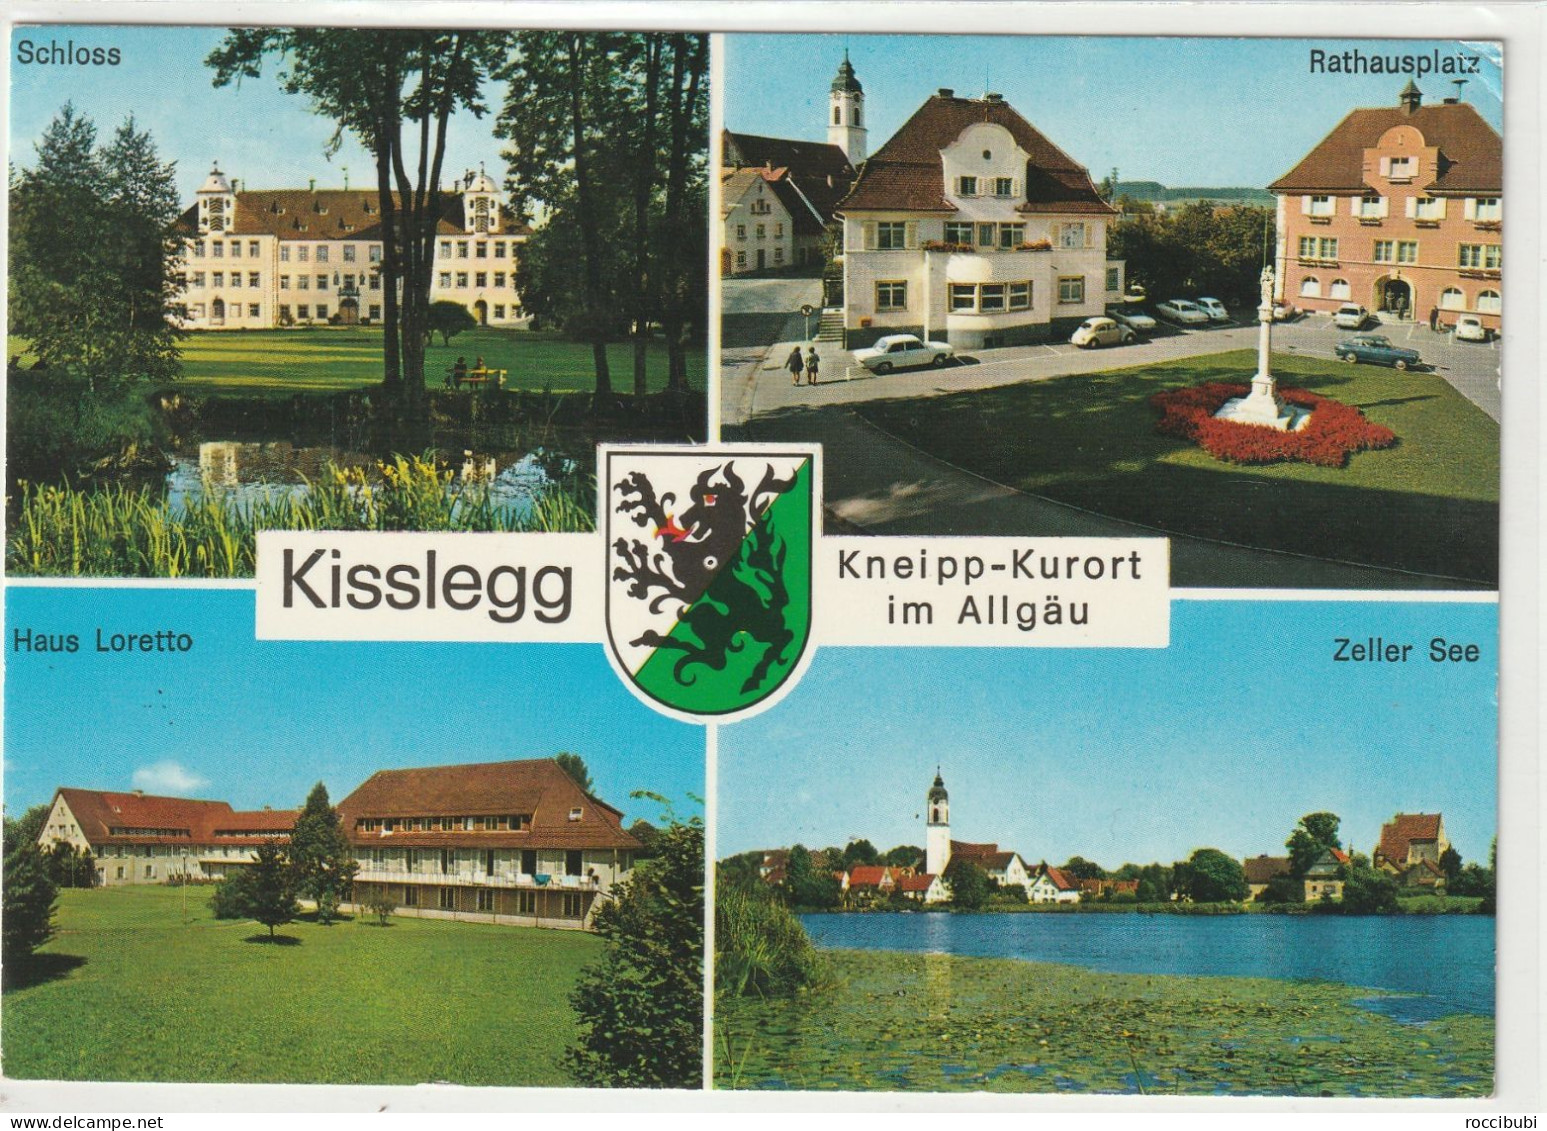 Kisslegg, Baden-Württemberg - Kisslegg